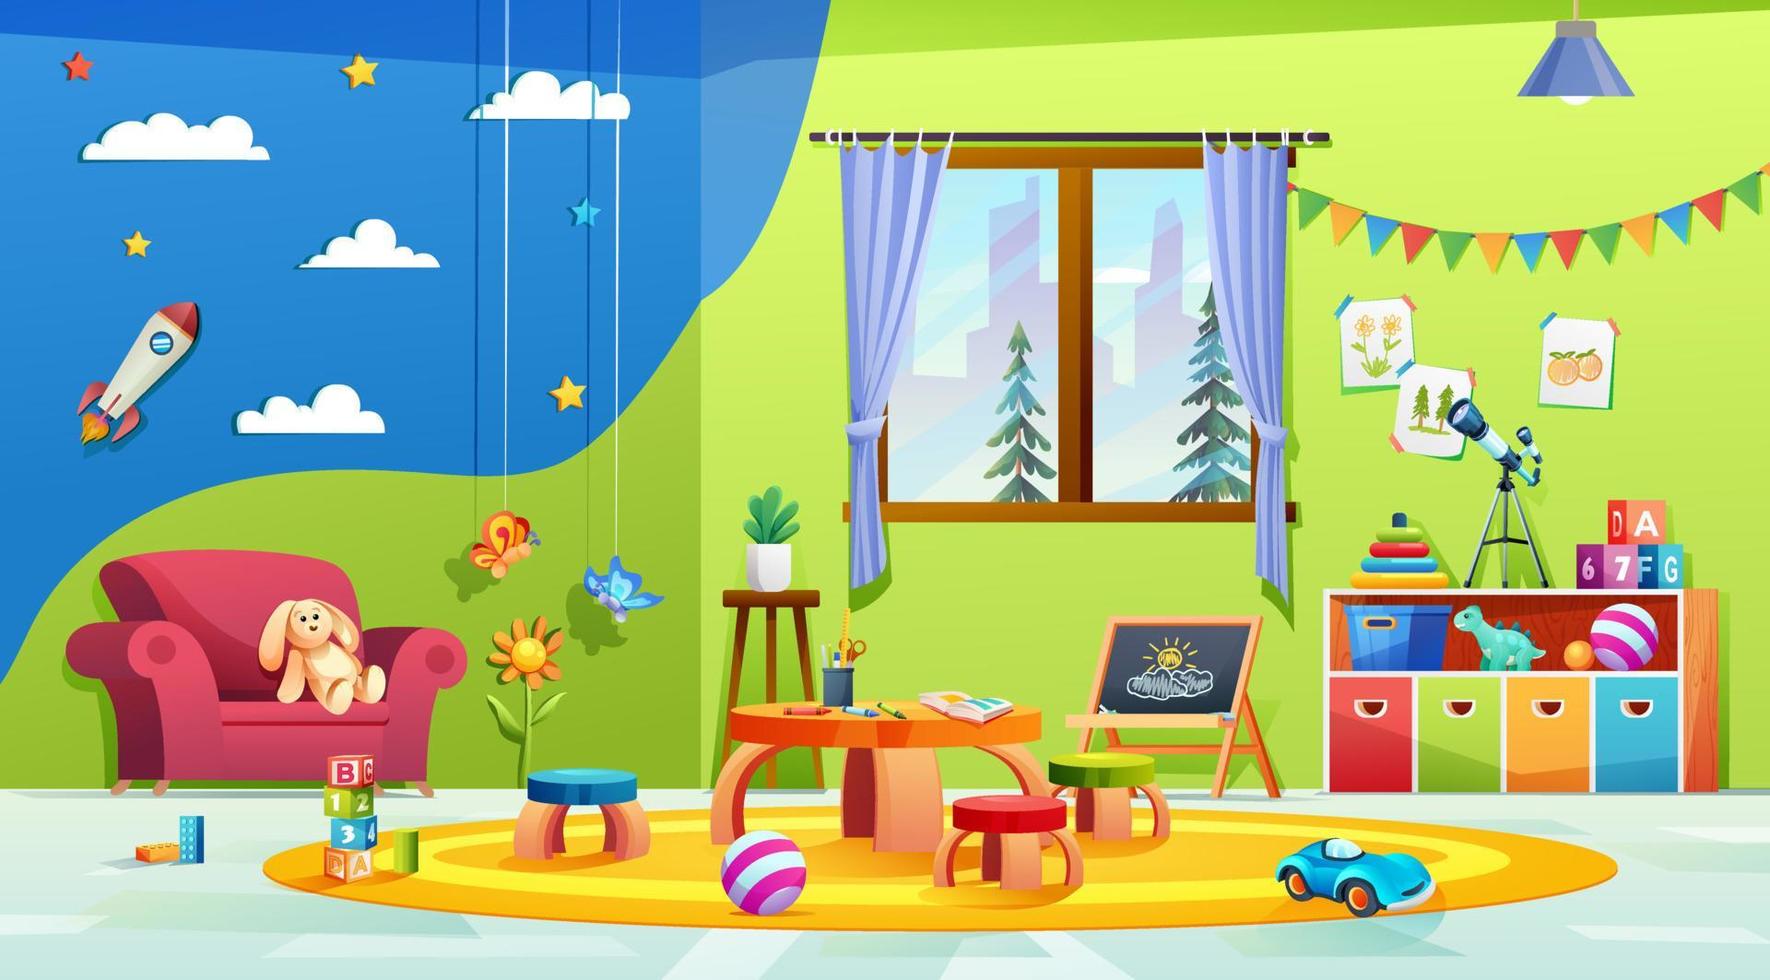 Diseño de interiores de sala de juegos para niños modernos. aula de jardín de infantes con muebles, artículos de papelería y juguetes ilustración de dibujos animados vector